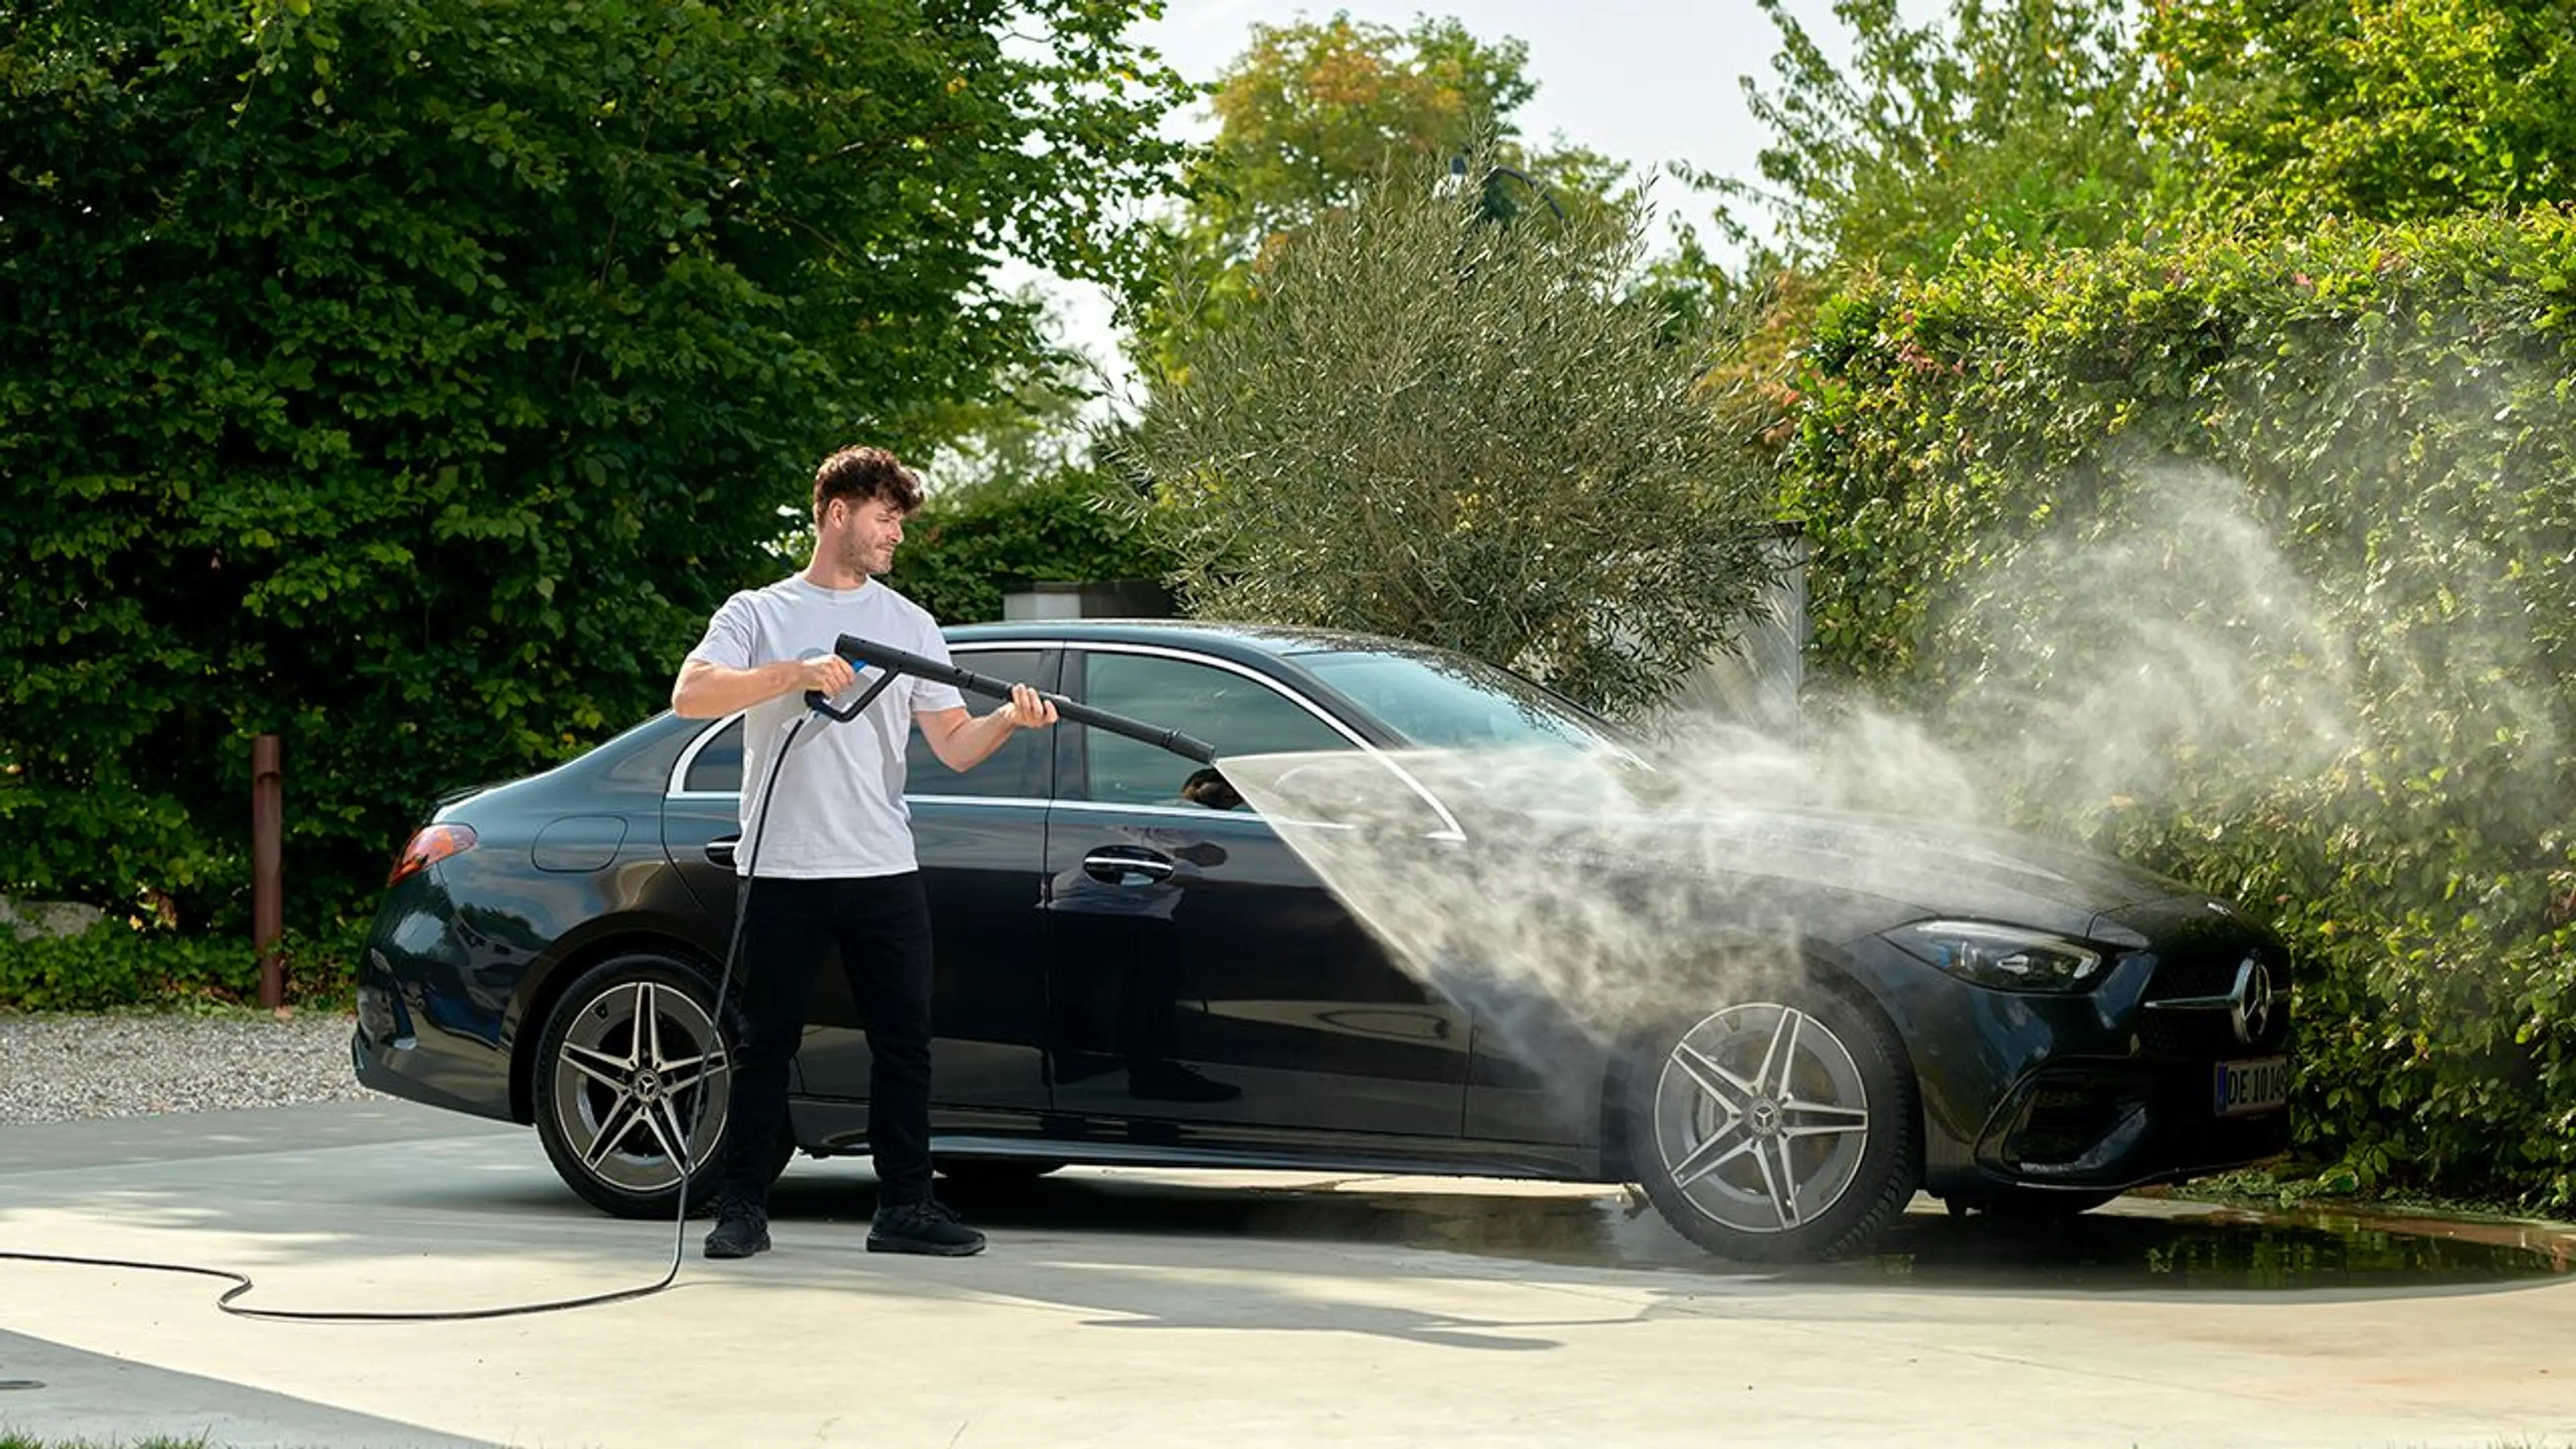 Mann som spyler ren bilen med høytrykkspyler.